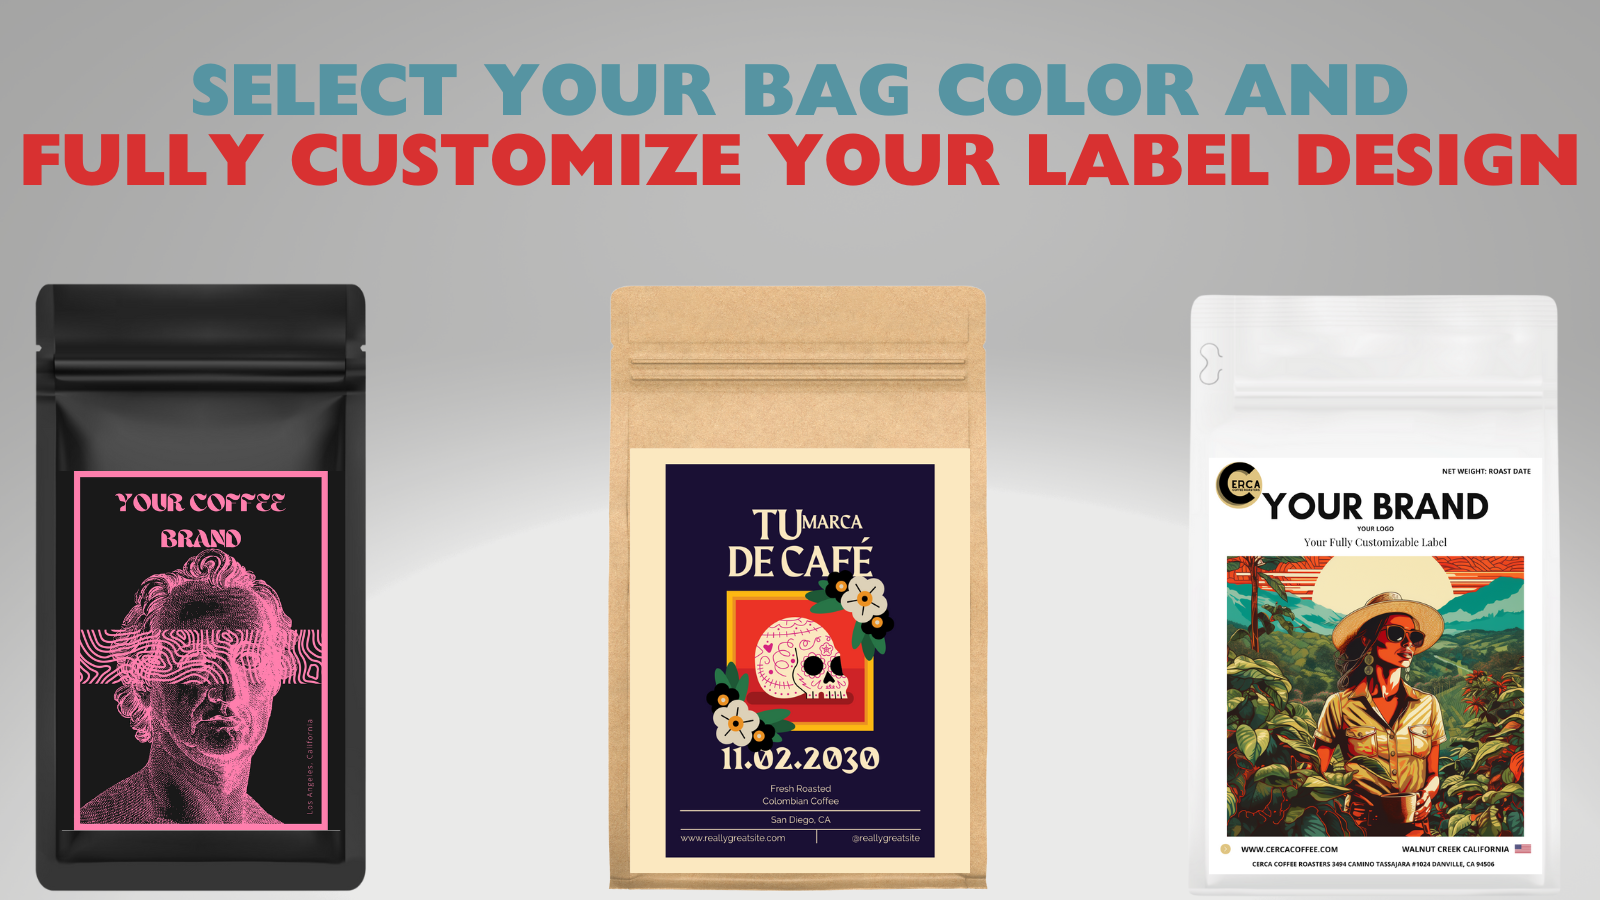 选择您的袋子颜色并完全定制您的标签设计。